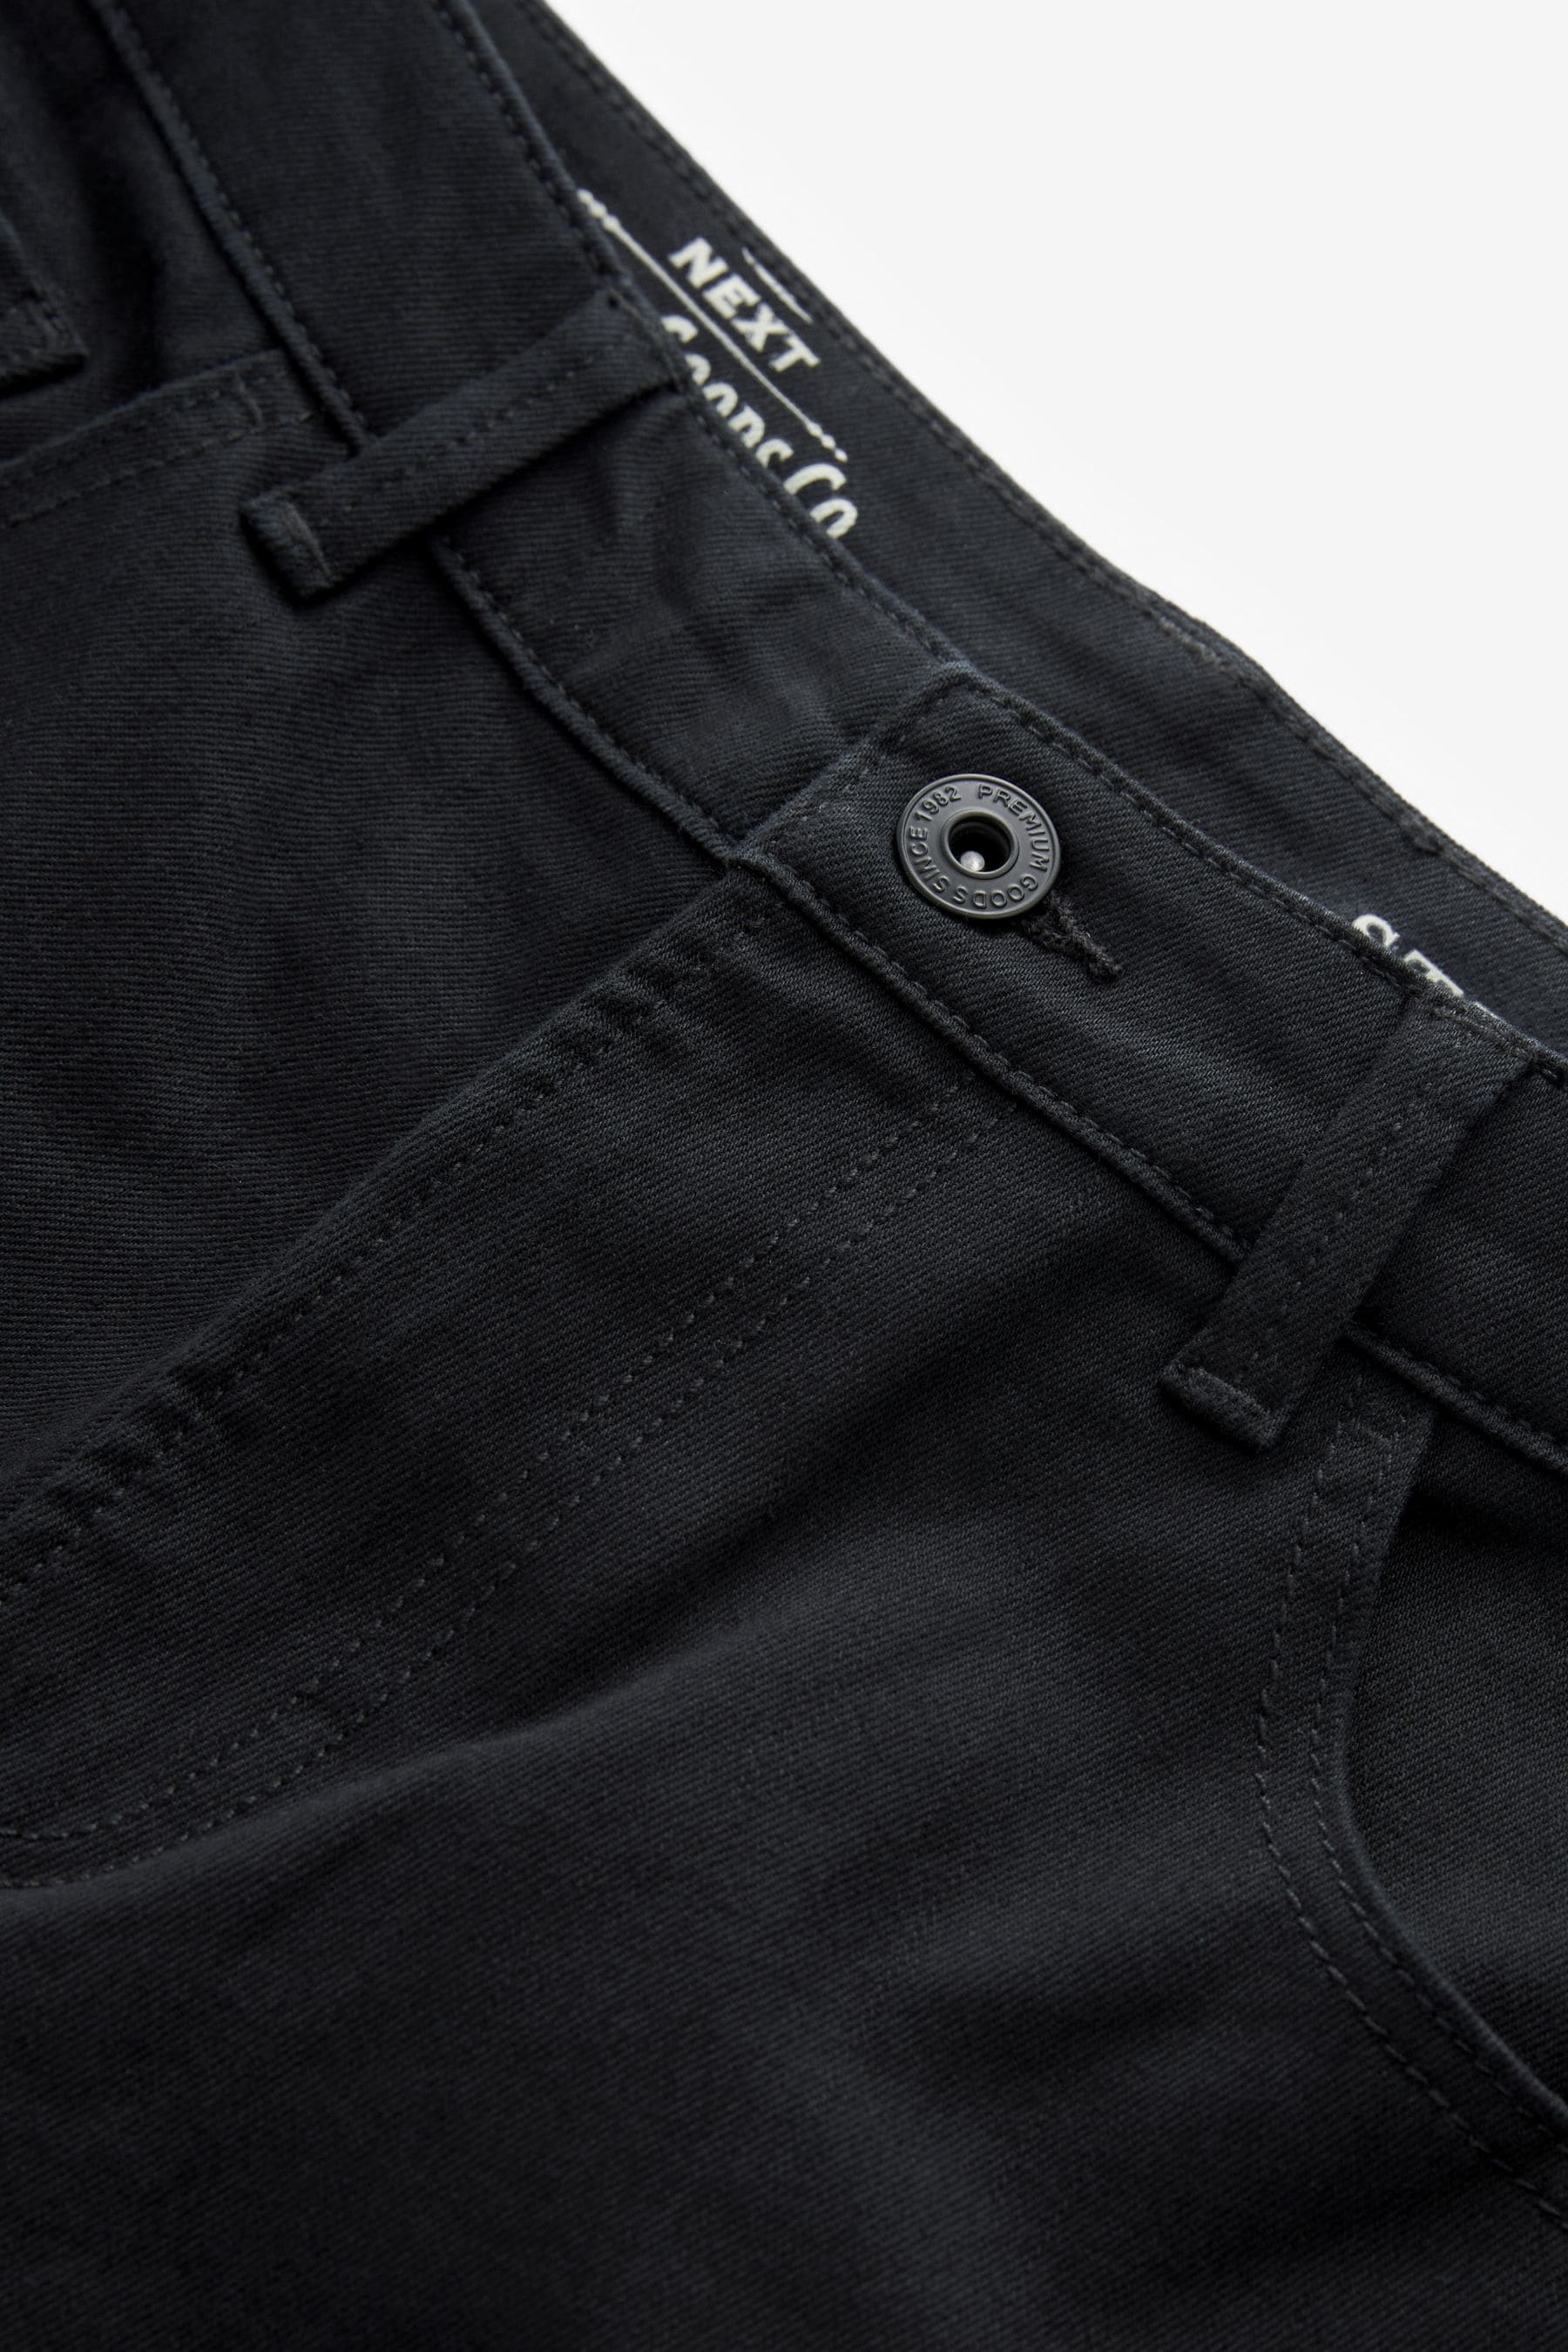 Buy Stretch Denim Shorts from Next Australia